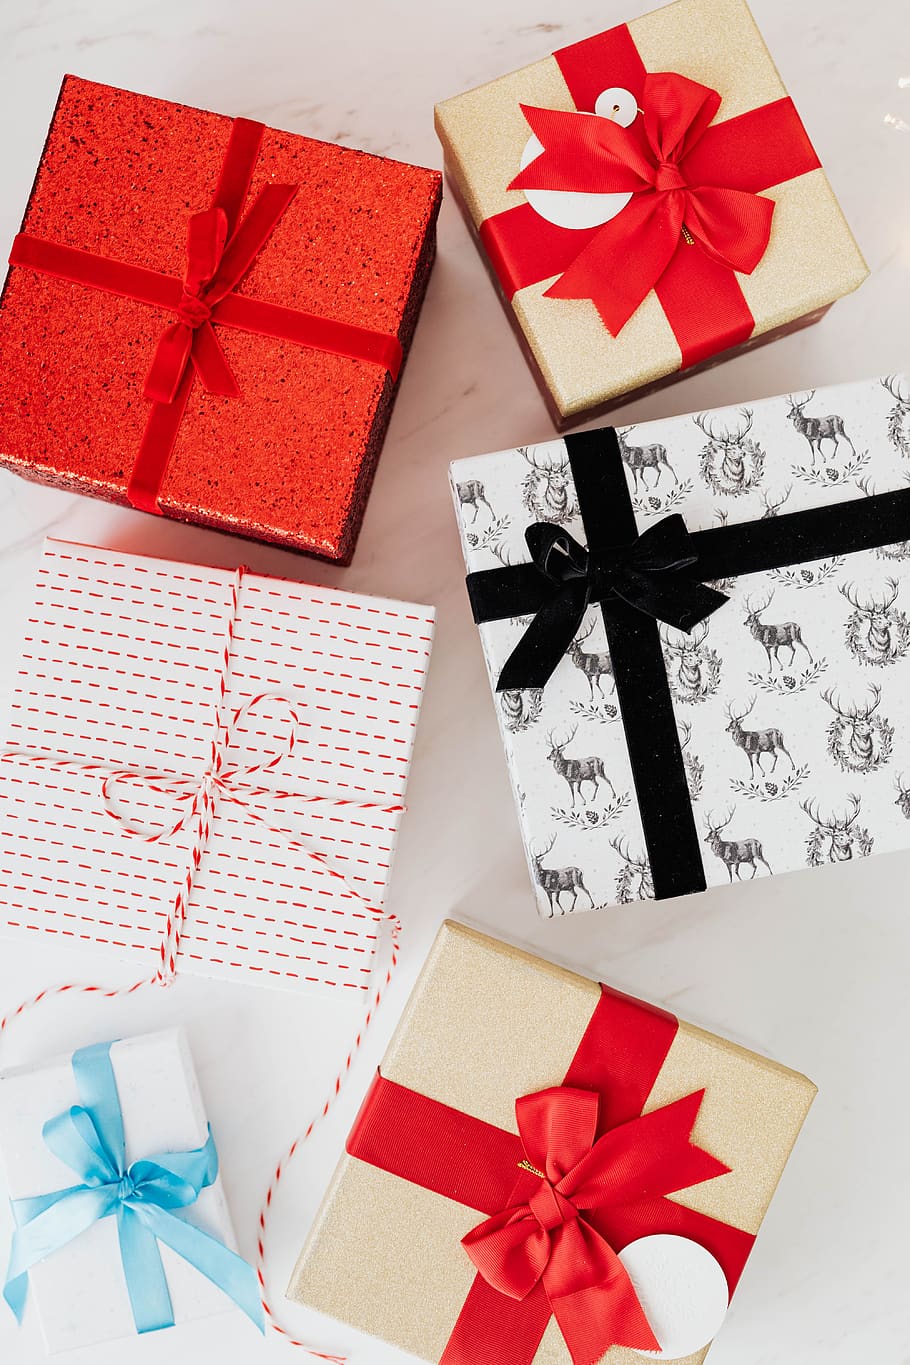 regalo, navidad, regalos, diciembre, vacaciones, festivo, alegre, arco, presente, caja